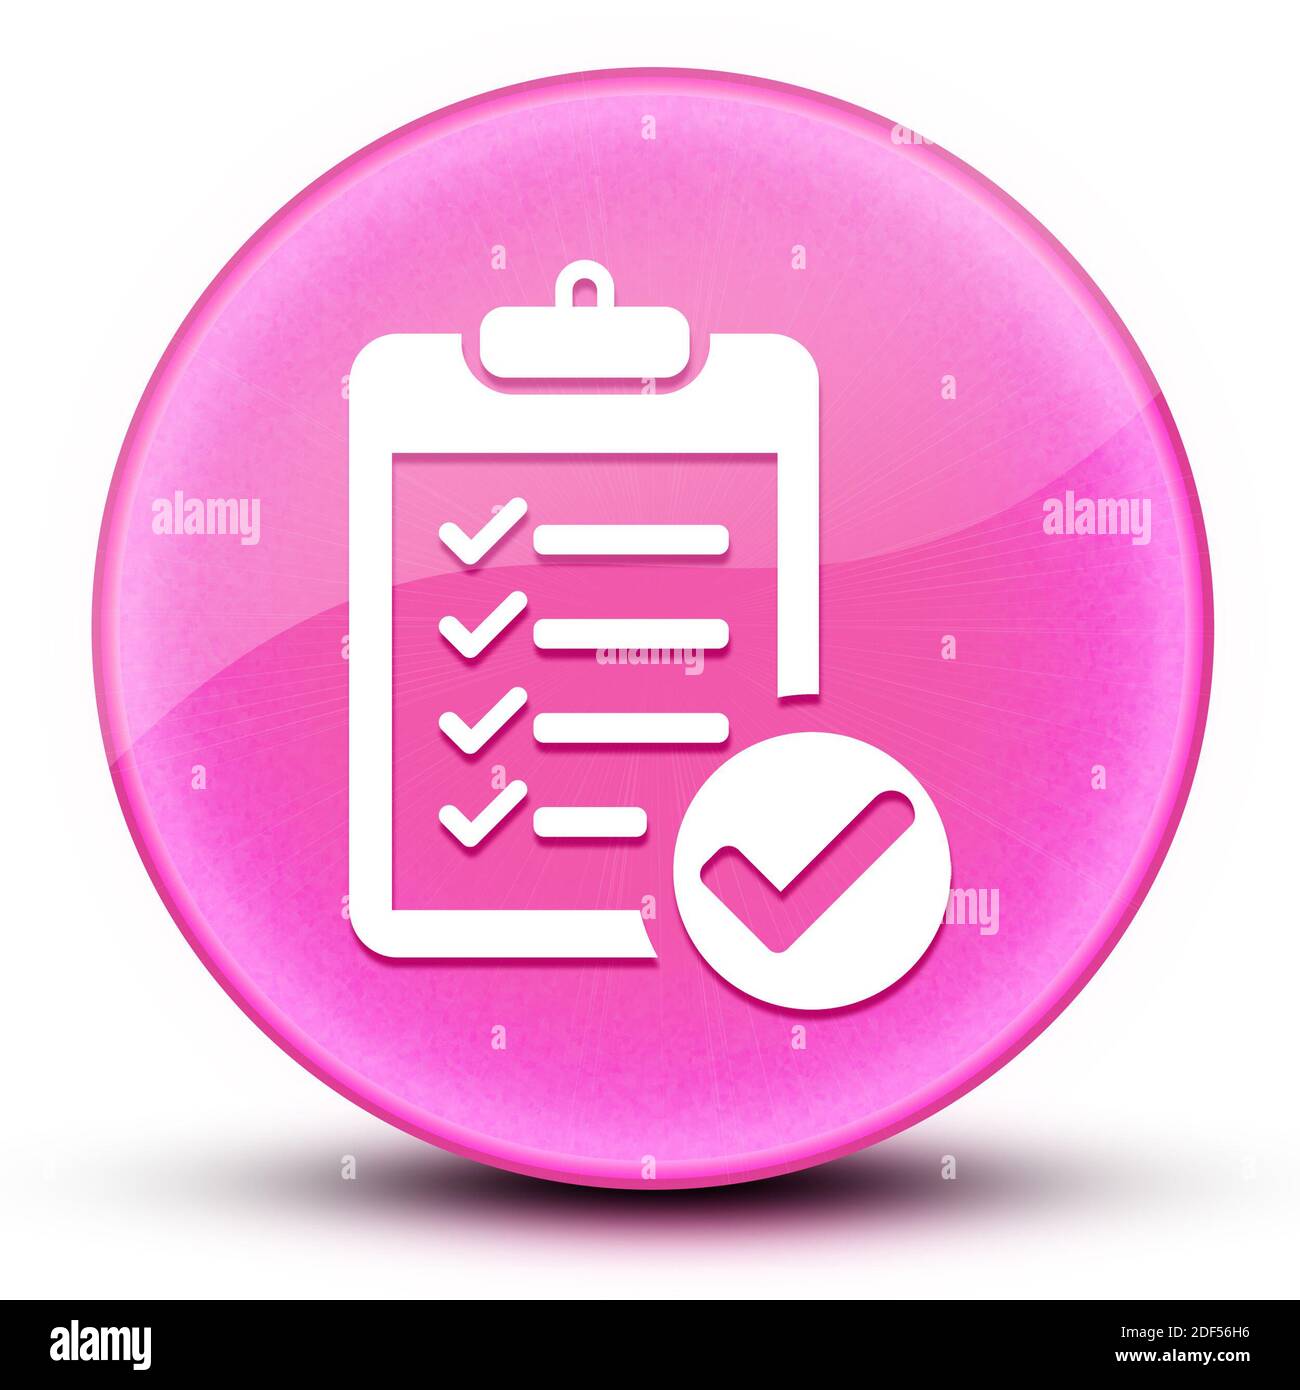 Lista di controllo eyeball lucido elegante rosa pulsante rotondo illustrazione astratta Foto Stock